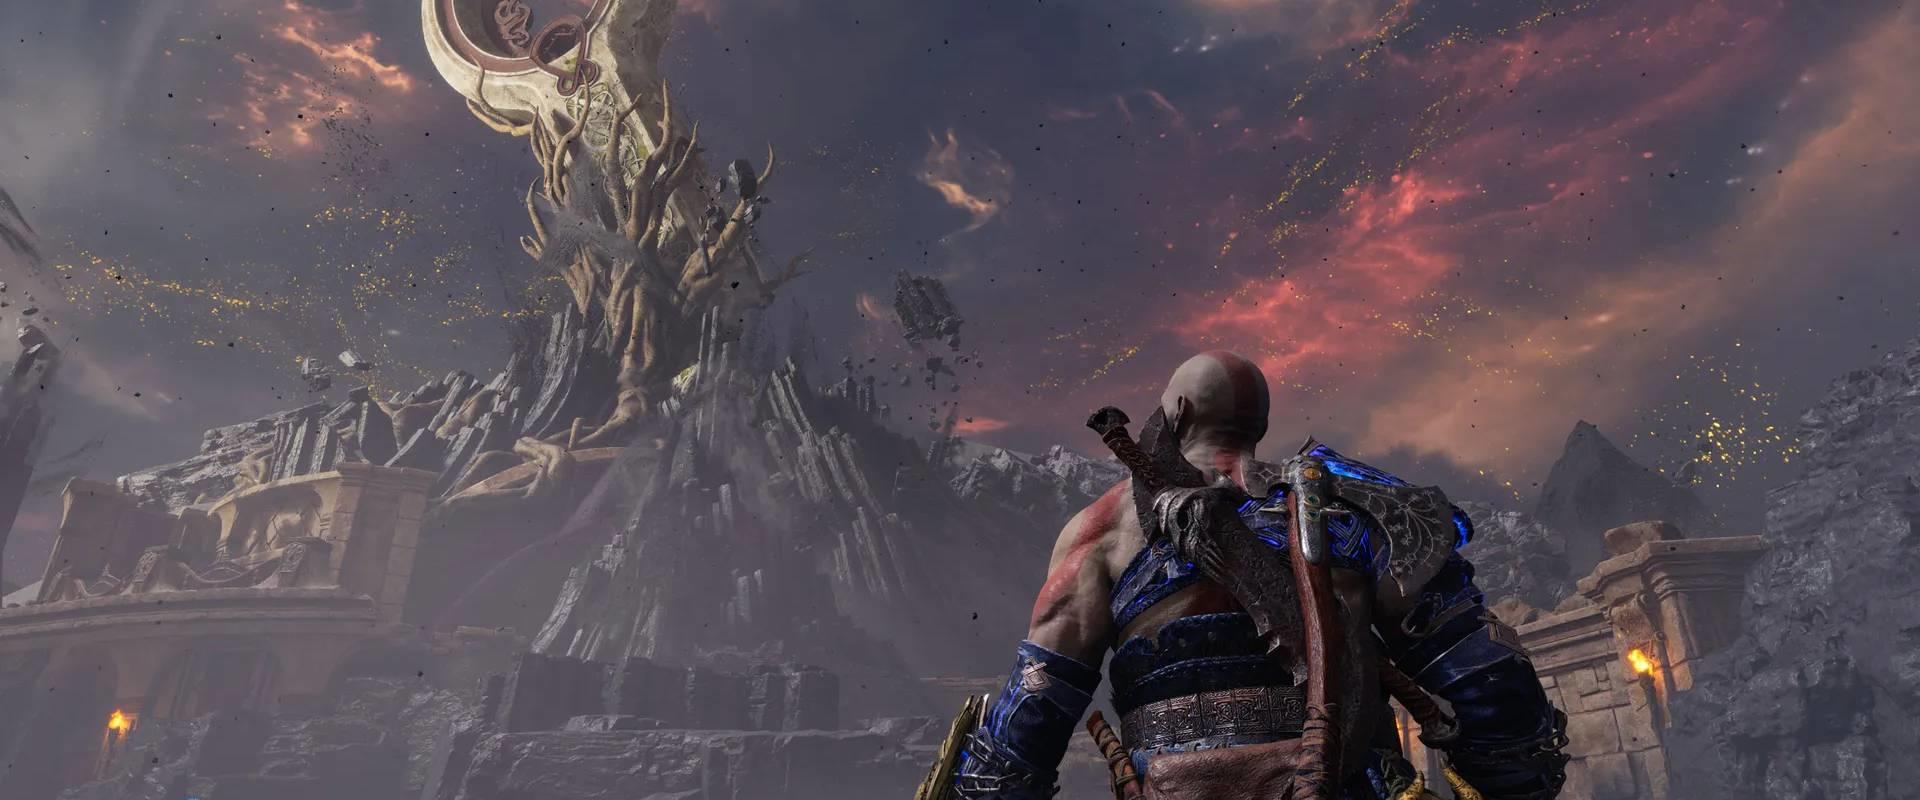 Megjött a Sony-Mikulás, a puttonyában pedig ingyen God of War: Ragnarök DLC lapul